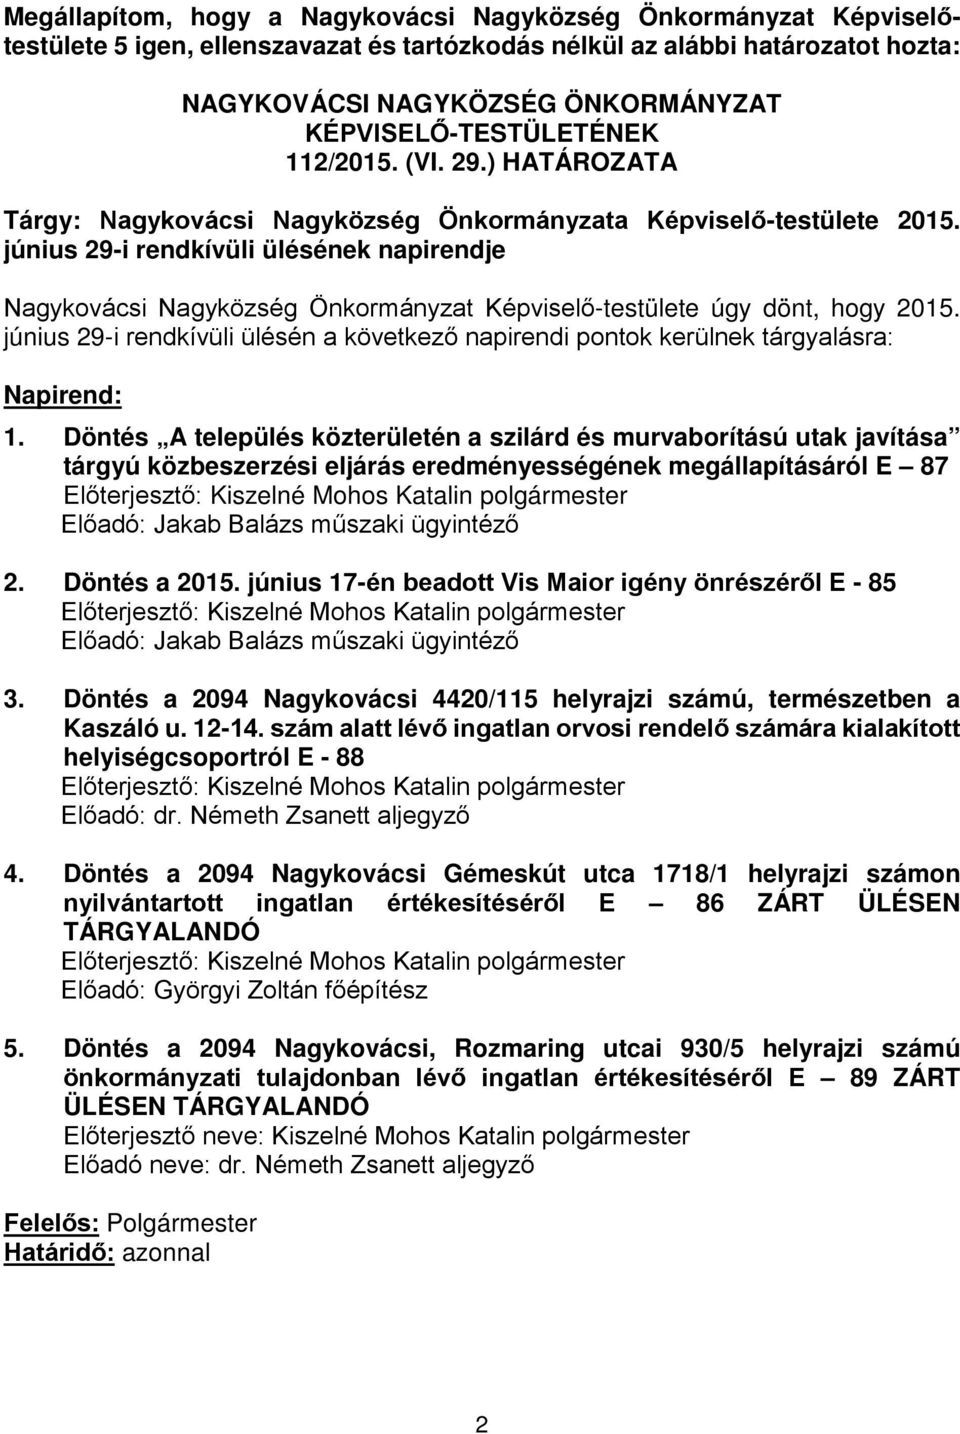 június 29-i rendkívüli ülésének napirendje Nagykovácsi Nagyközség Önkormányzat Képviselő-testülete úgy dönt, hogy 2015.